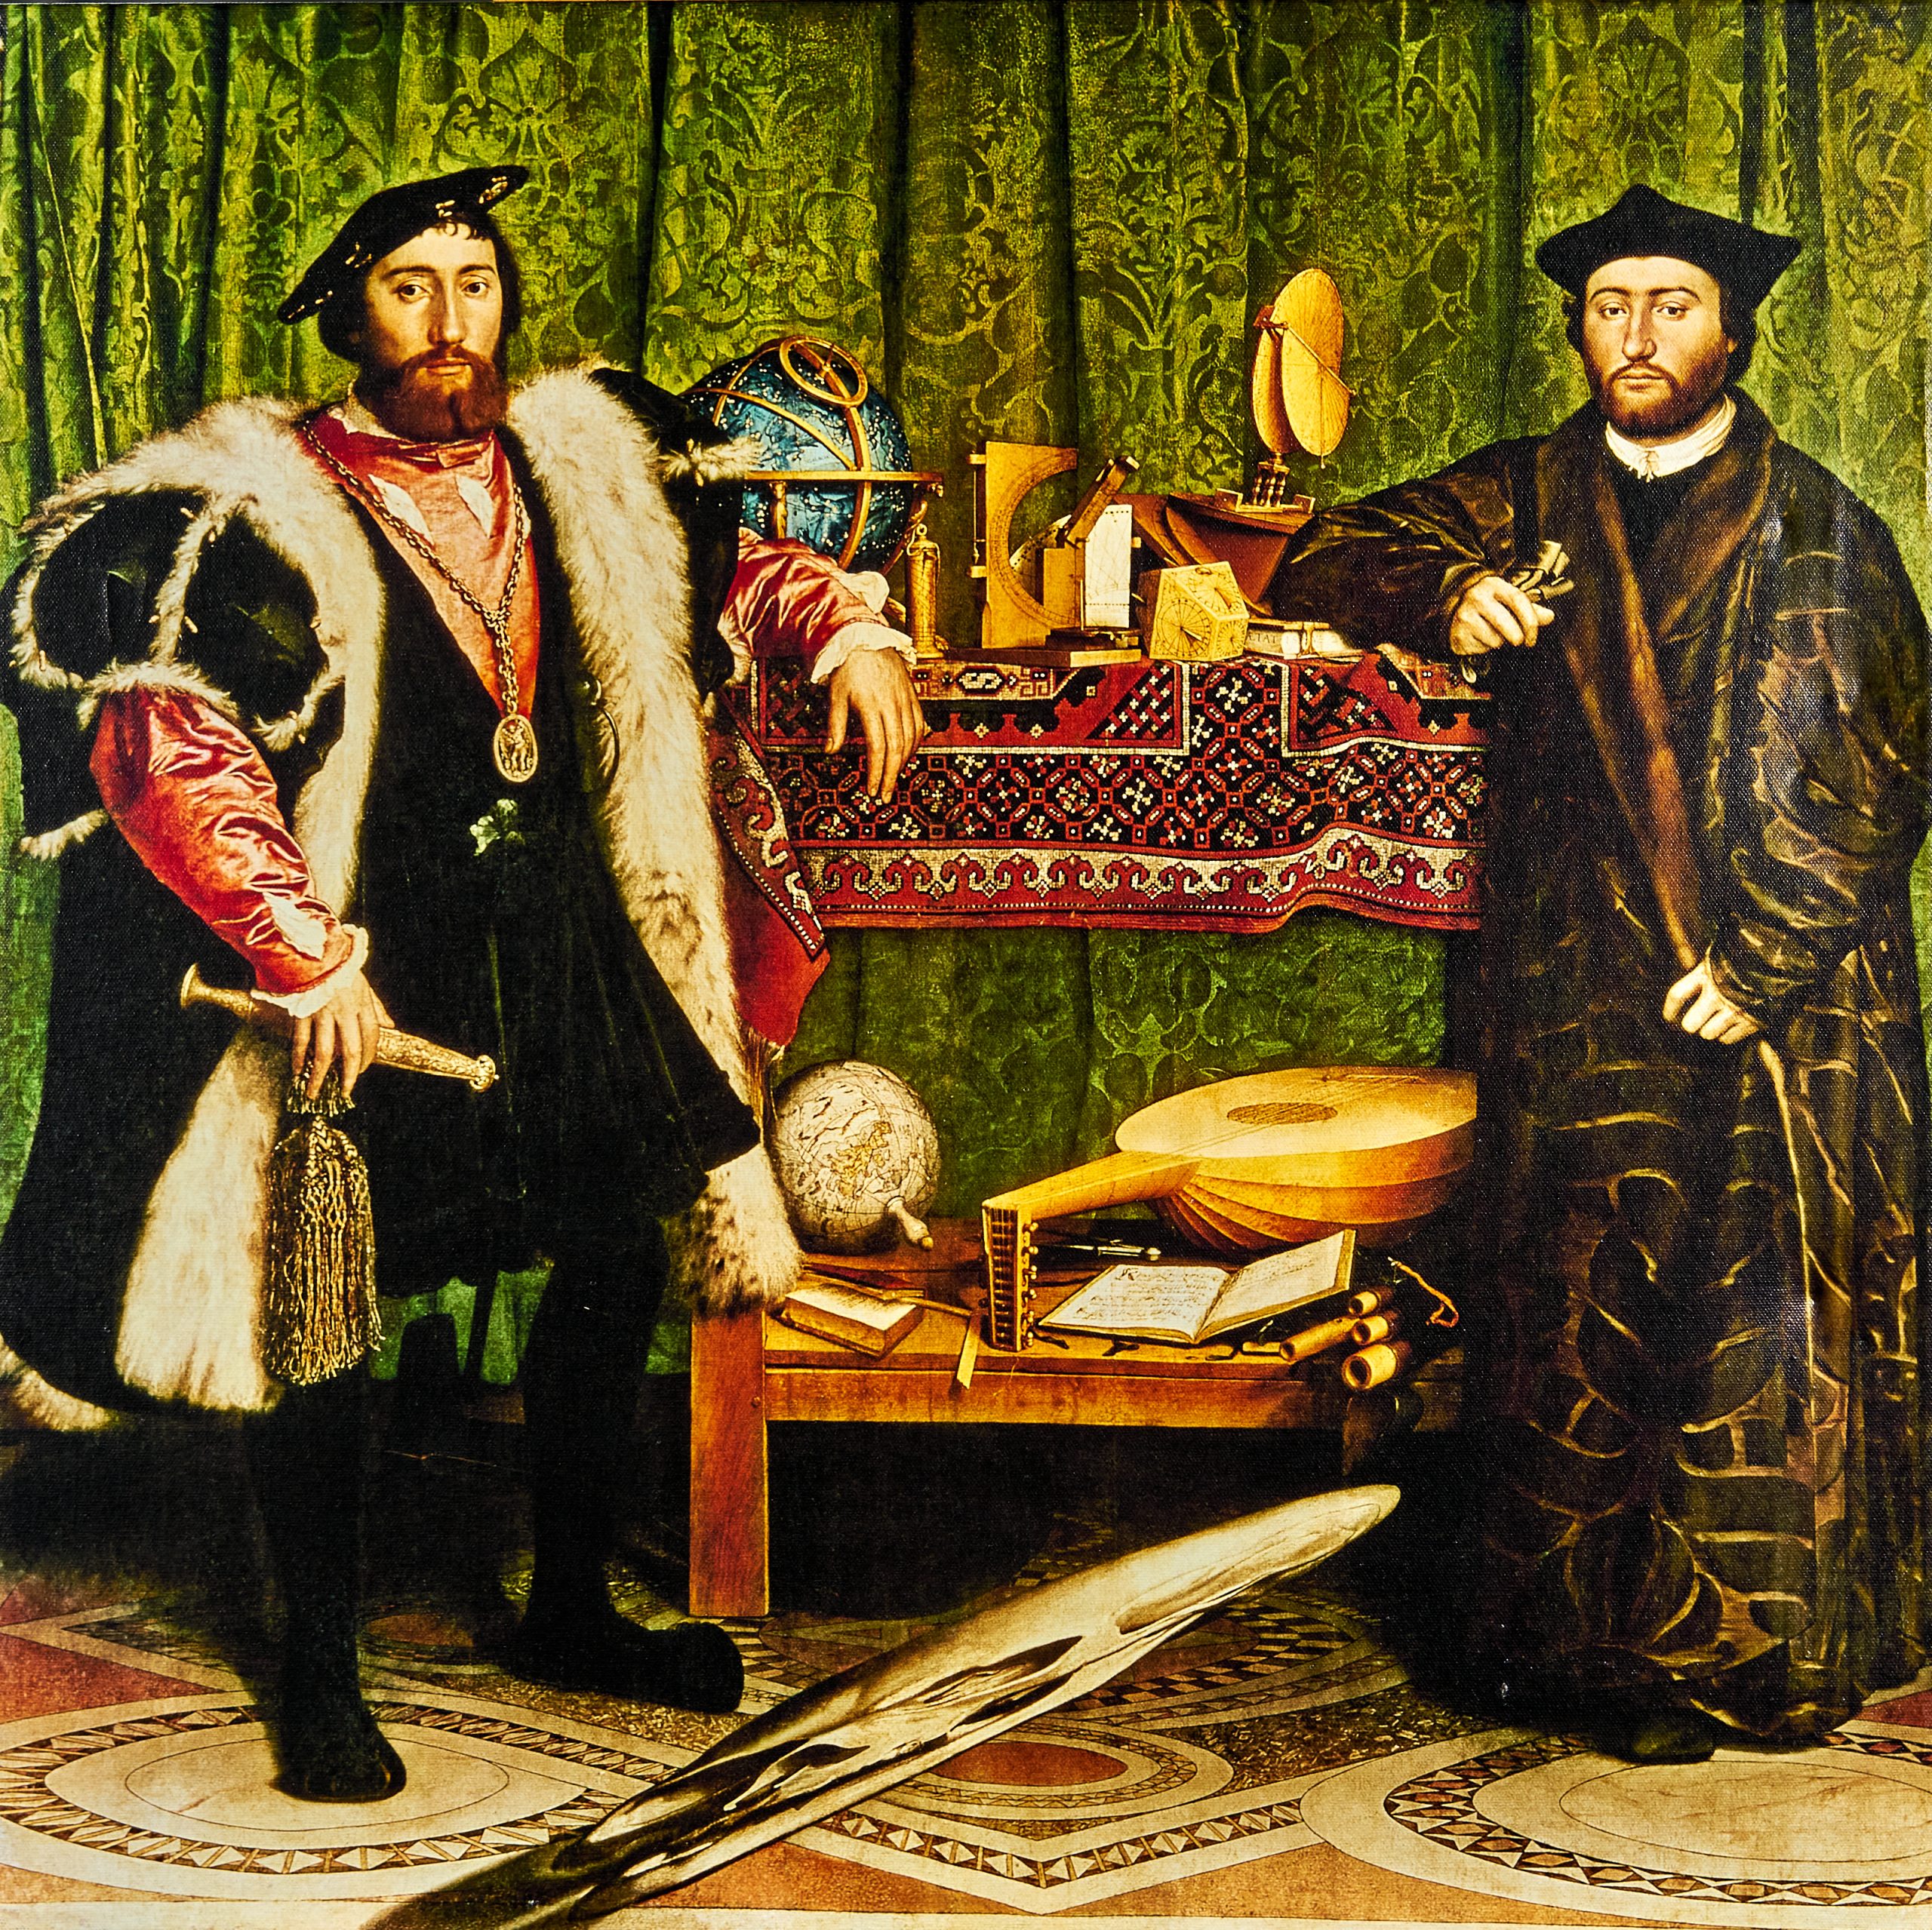 Holbein, Hans Bildnis der französischen Gesandten Jean de Dinteville und Georges de Selve